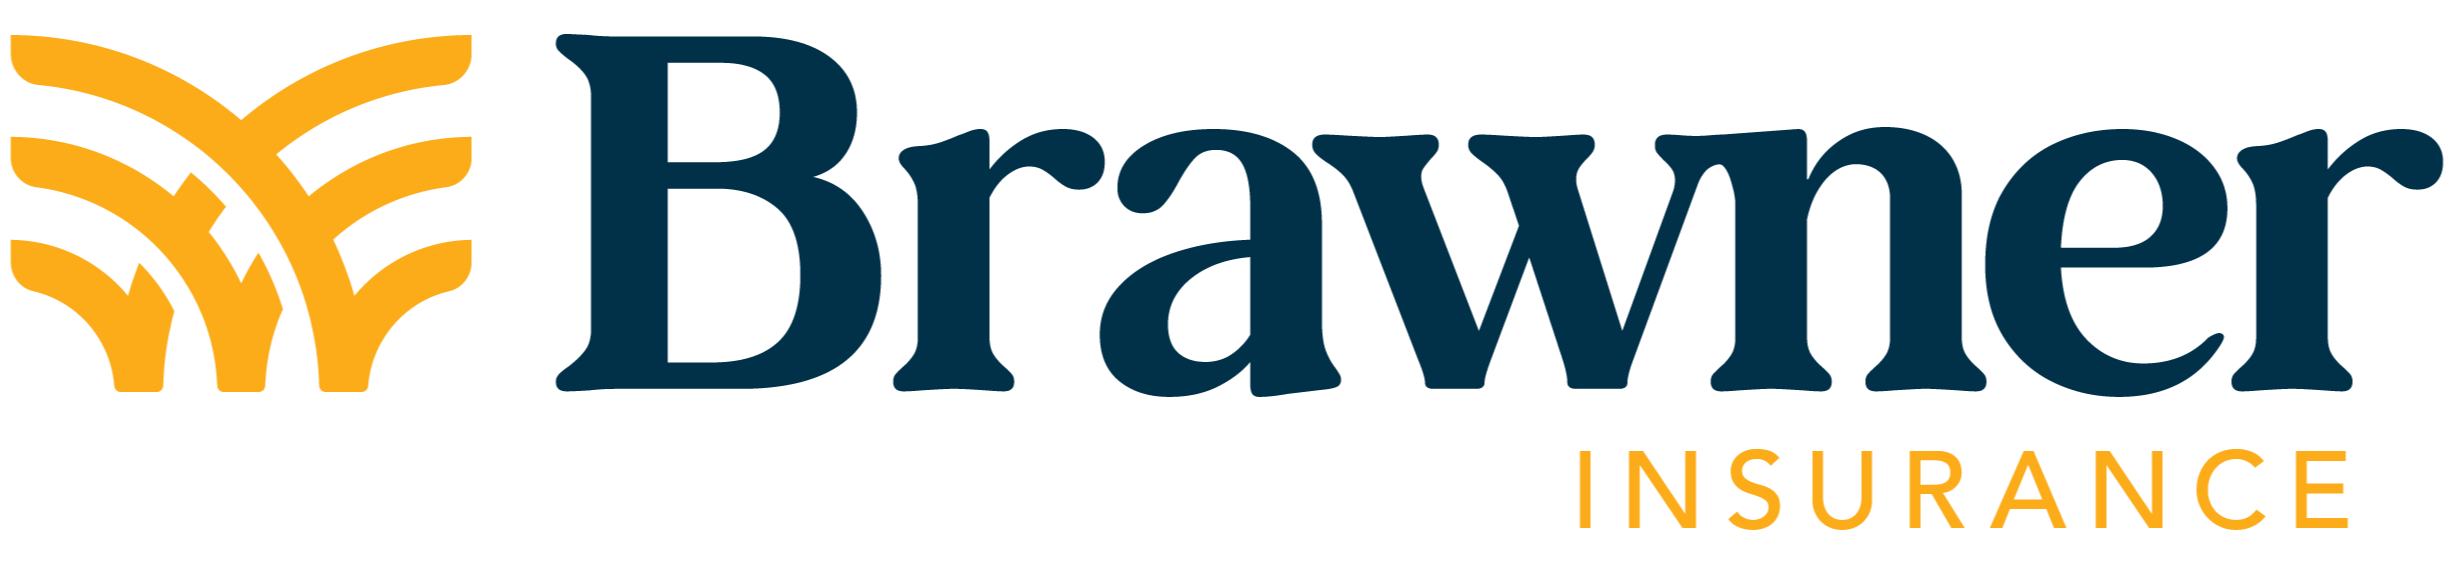 Brawner Insurance-04-1-3